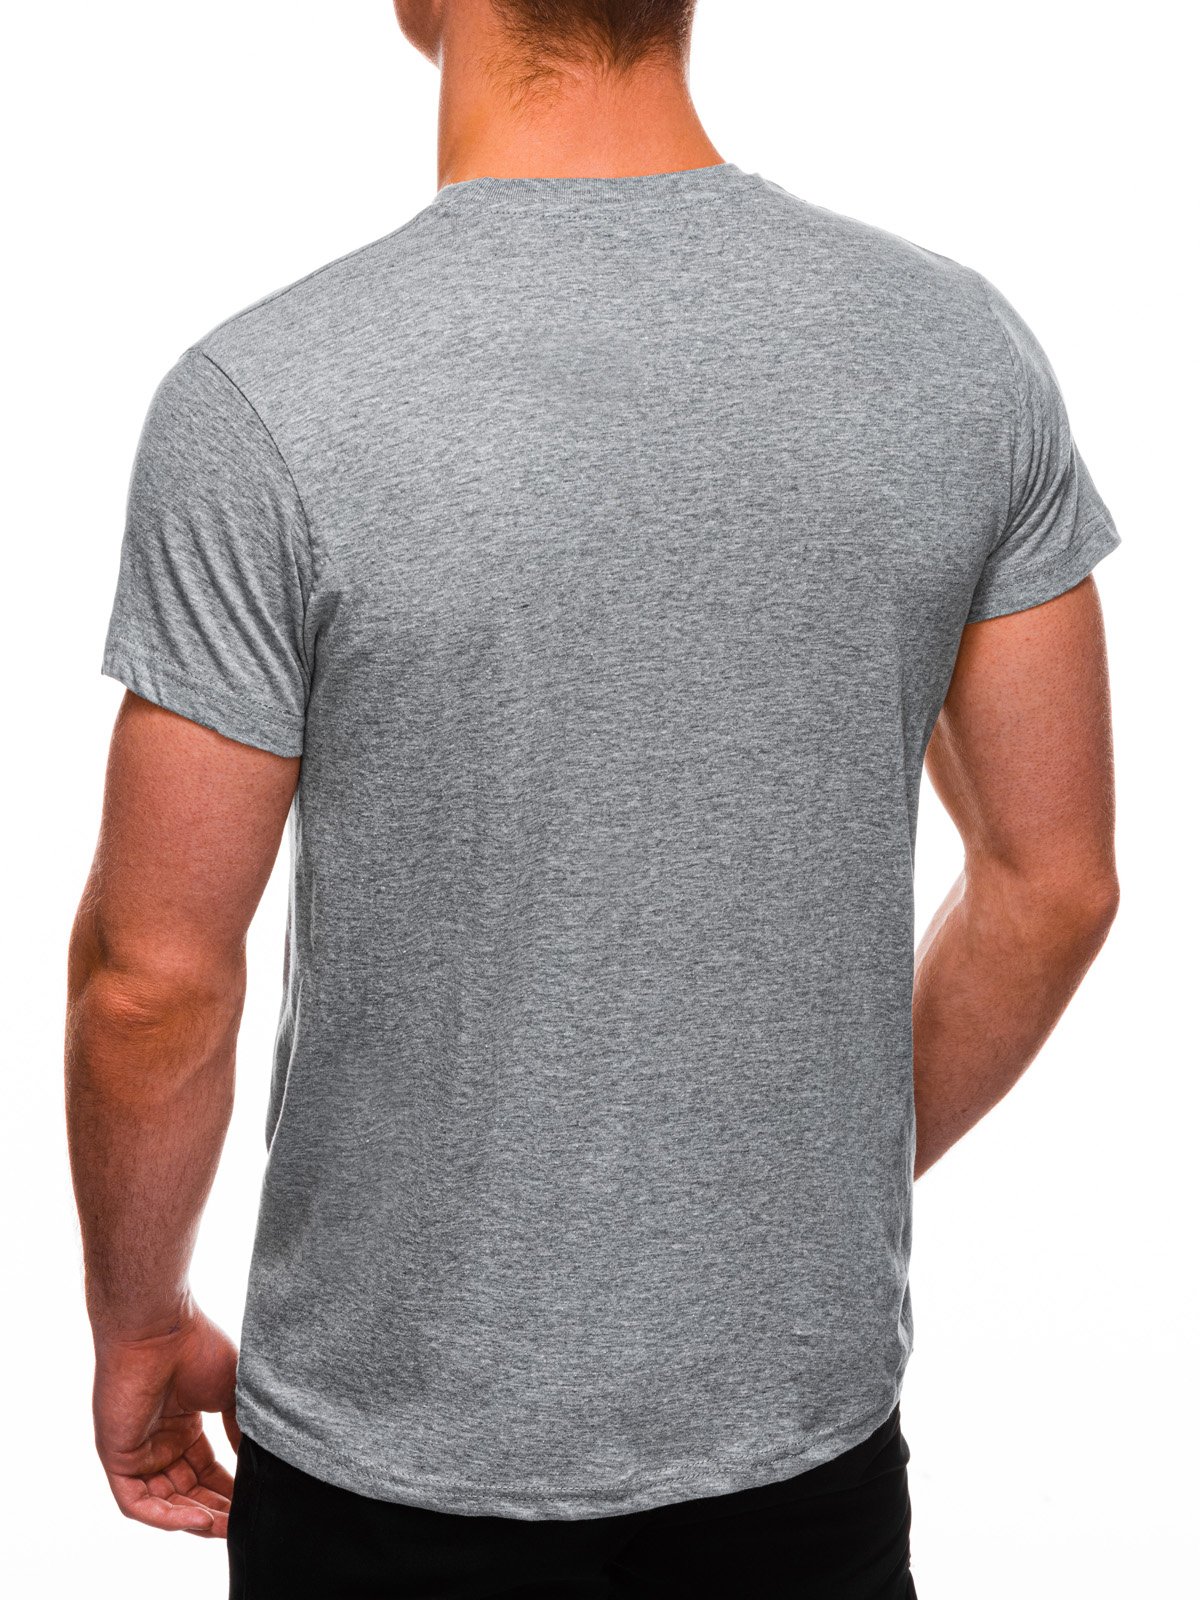 Men's plain t-shirt S970 - grey | MODONE wholesale - Clothing For Men